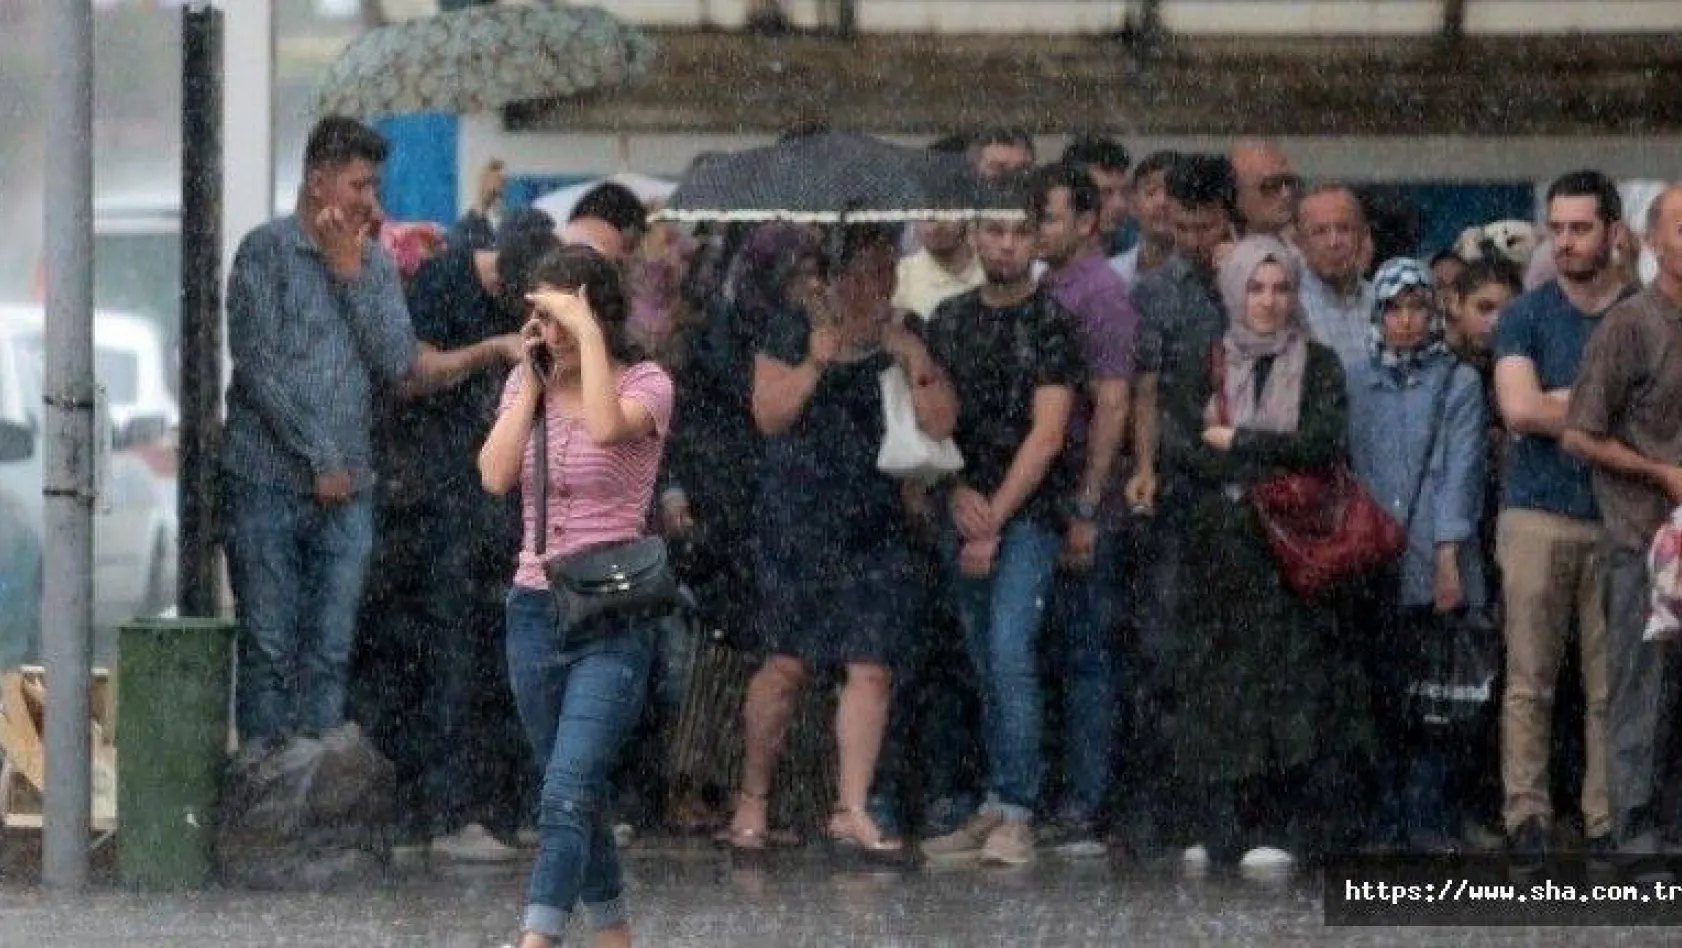 İstanbul serin ve yağışlı havanın etkisine girecek